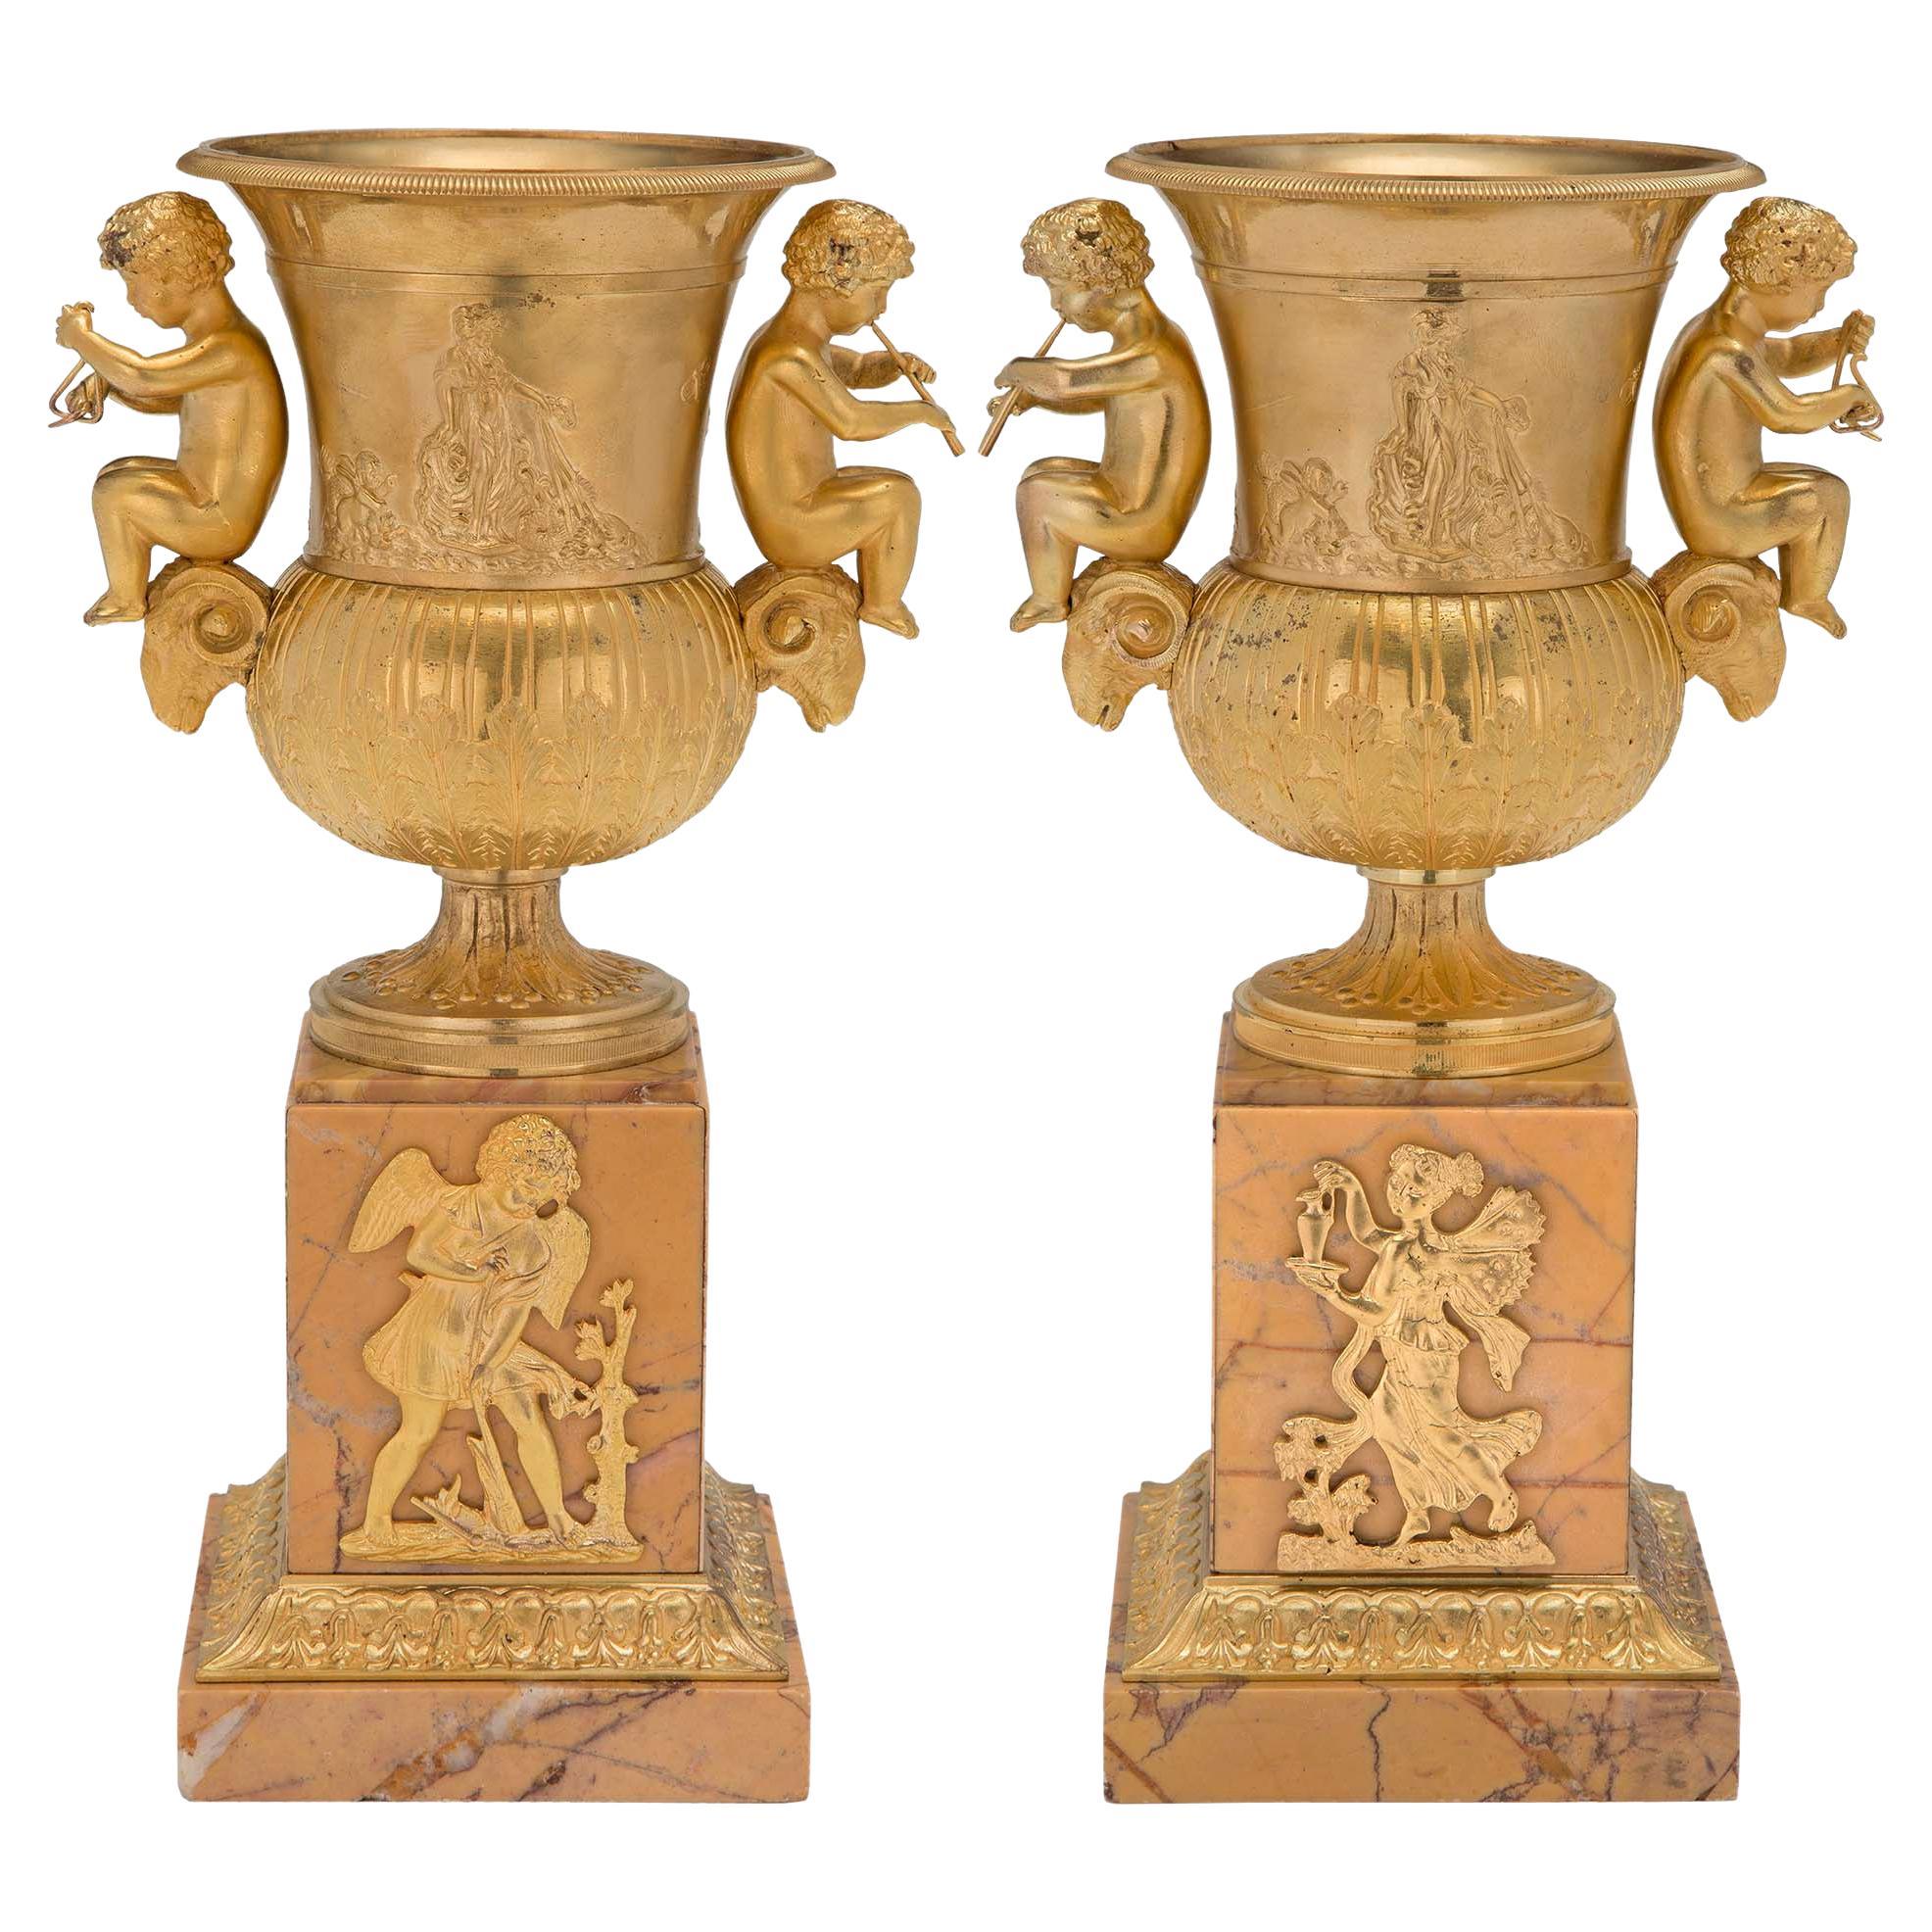 Neoklassizistische Urnen aus Goldbronze und Siena-Marmor aus dem 19. Jahrhundert